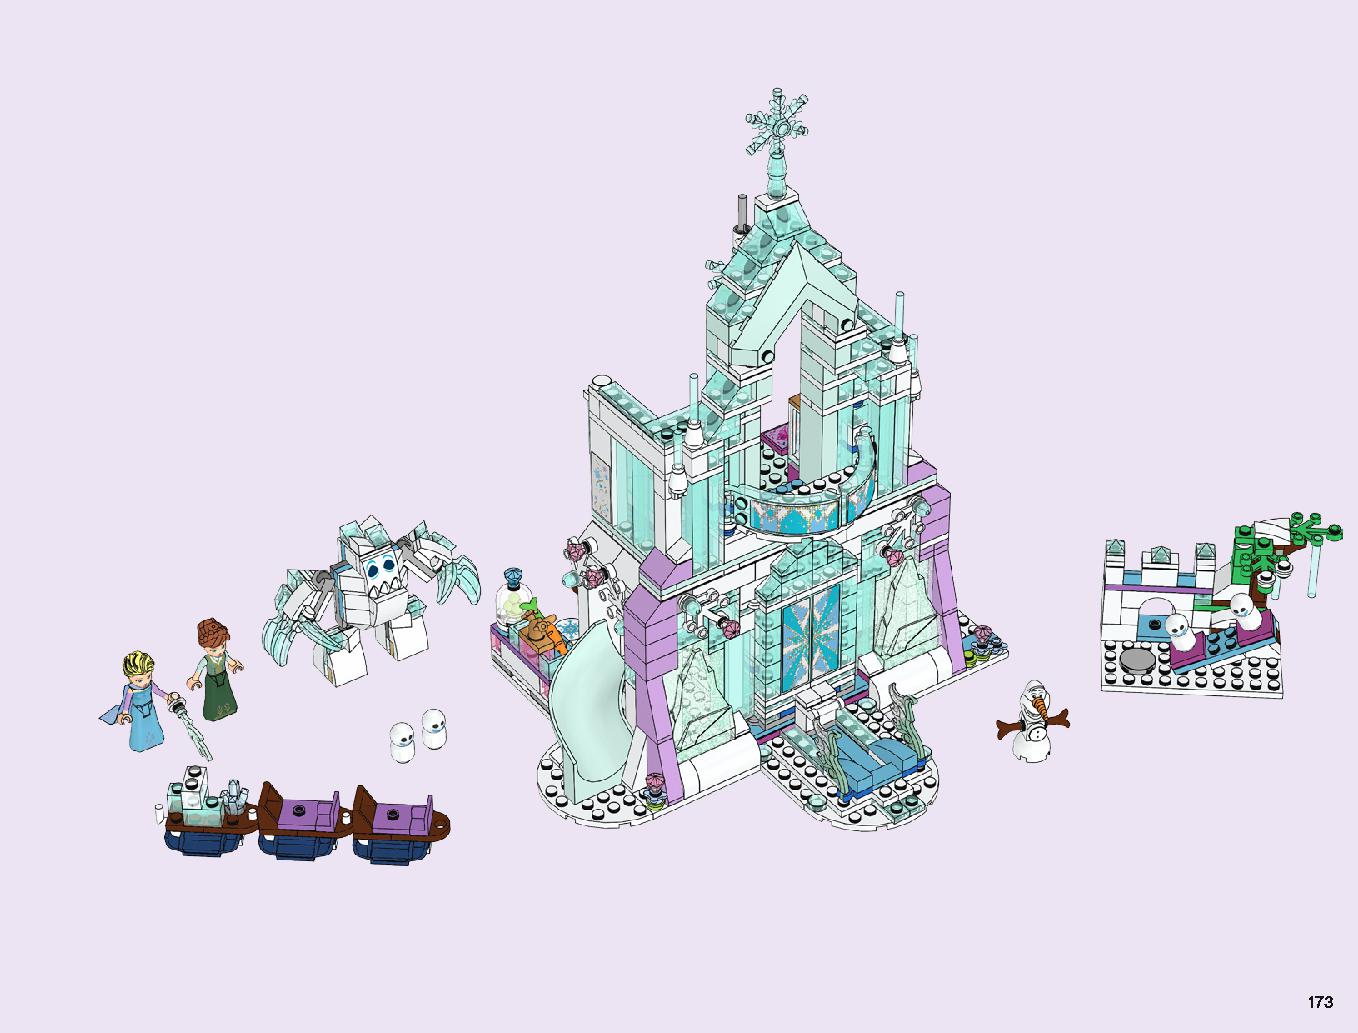 アナと雪の女王 “アイスキャッスル・ファンタジー” 43172 レゴの商品情報 レゴの説明書・組立方法 173 page